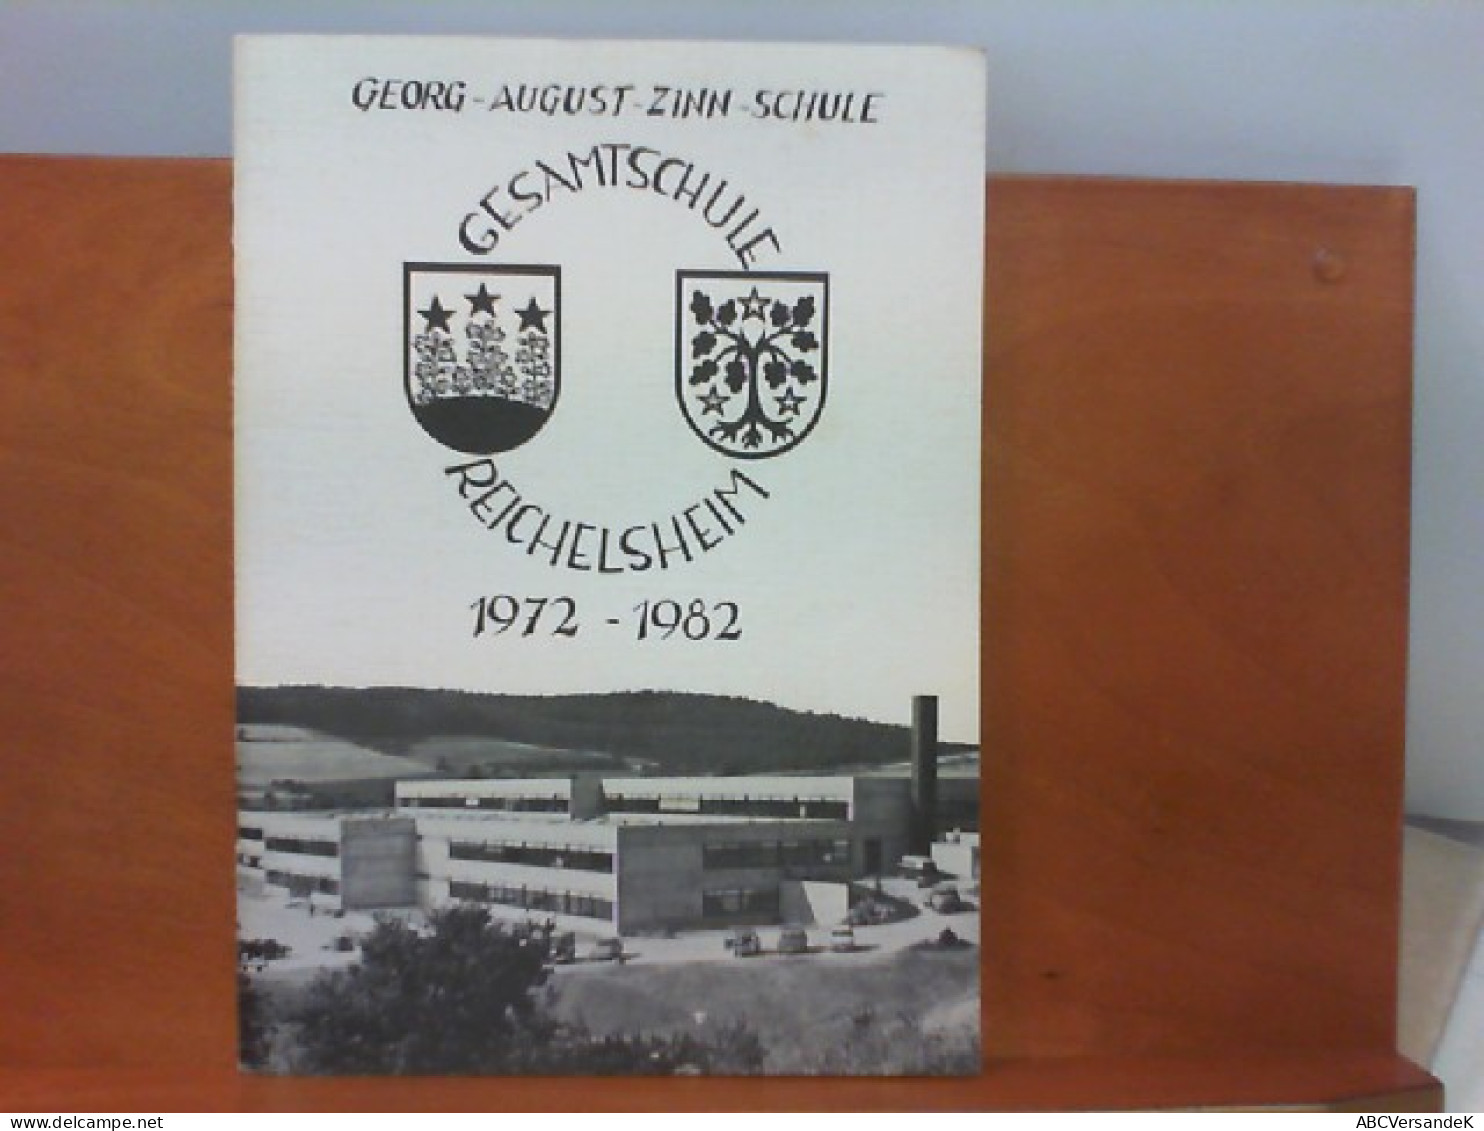 10 Jahre Georg - August - Zinn - Schule 1972 - 1982 - Deutschland Gesamt